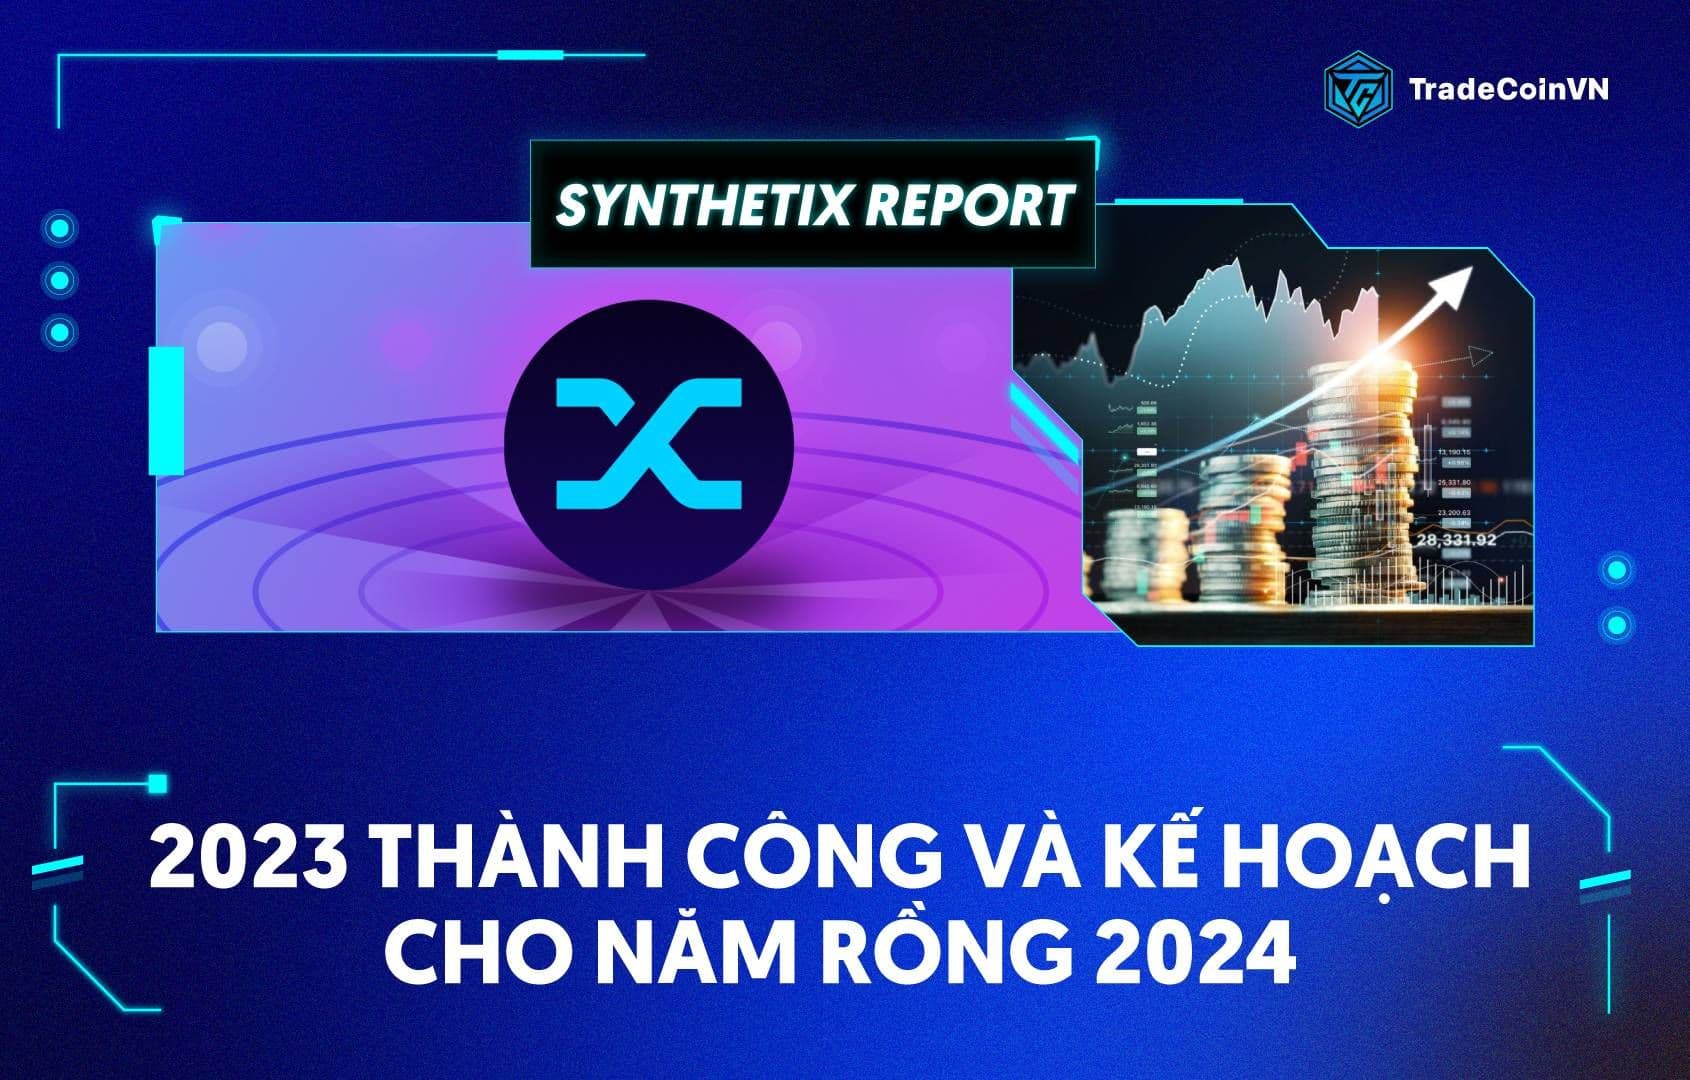 Synthetix report: 2023 thành công và kế hoạch “hóa Rồng” trong năm 2024